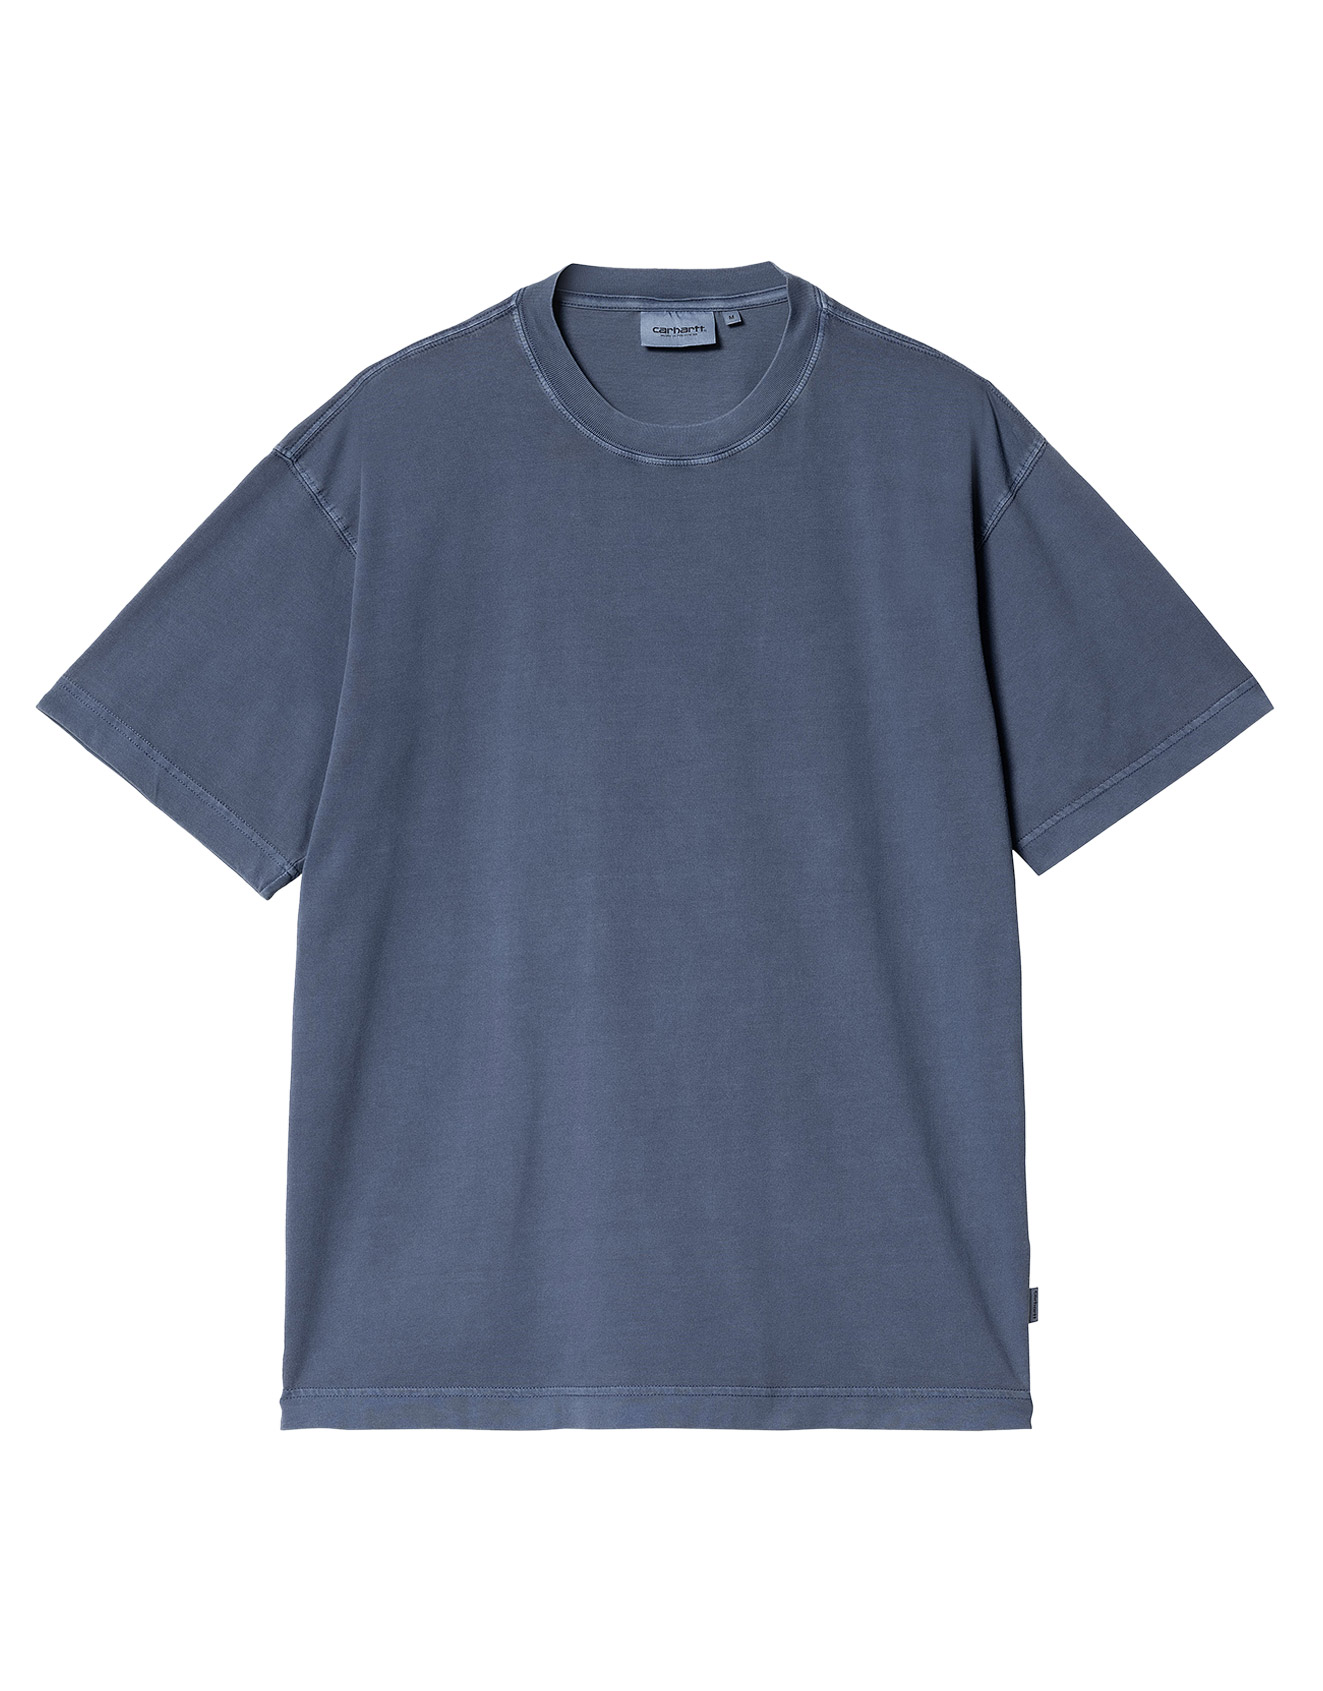 Carhartt WIP – S/S Dune T-shirt